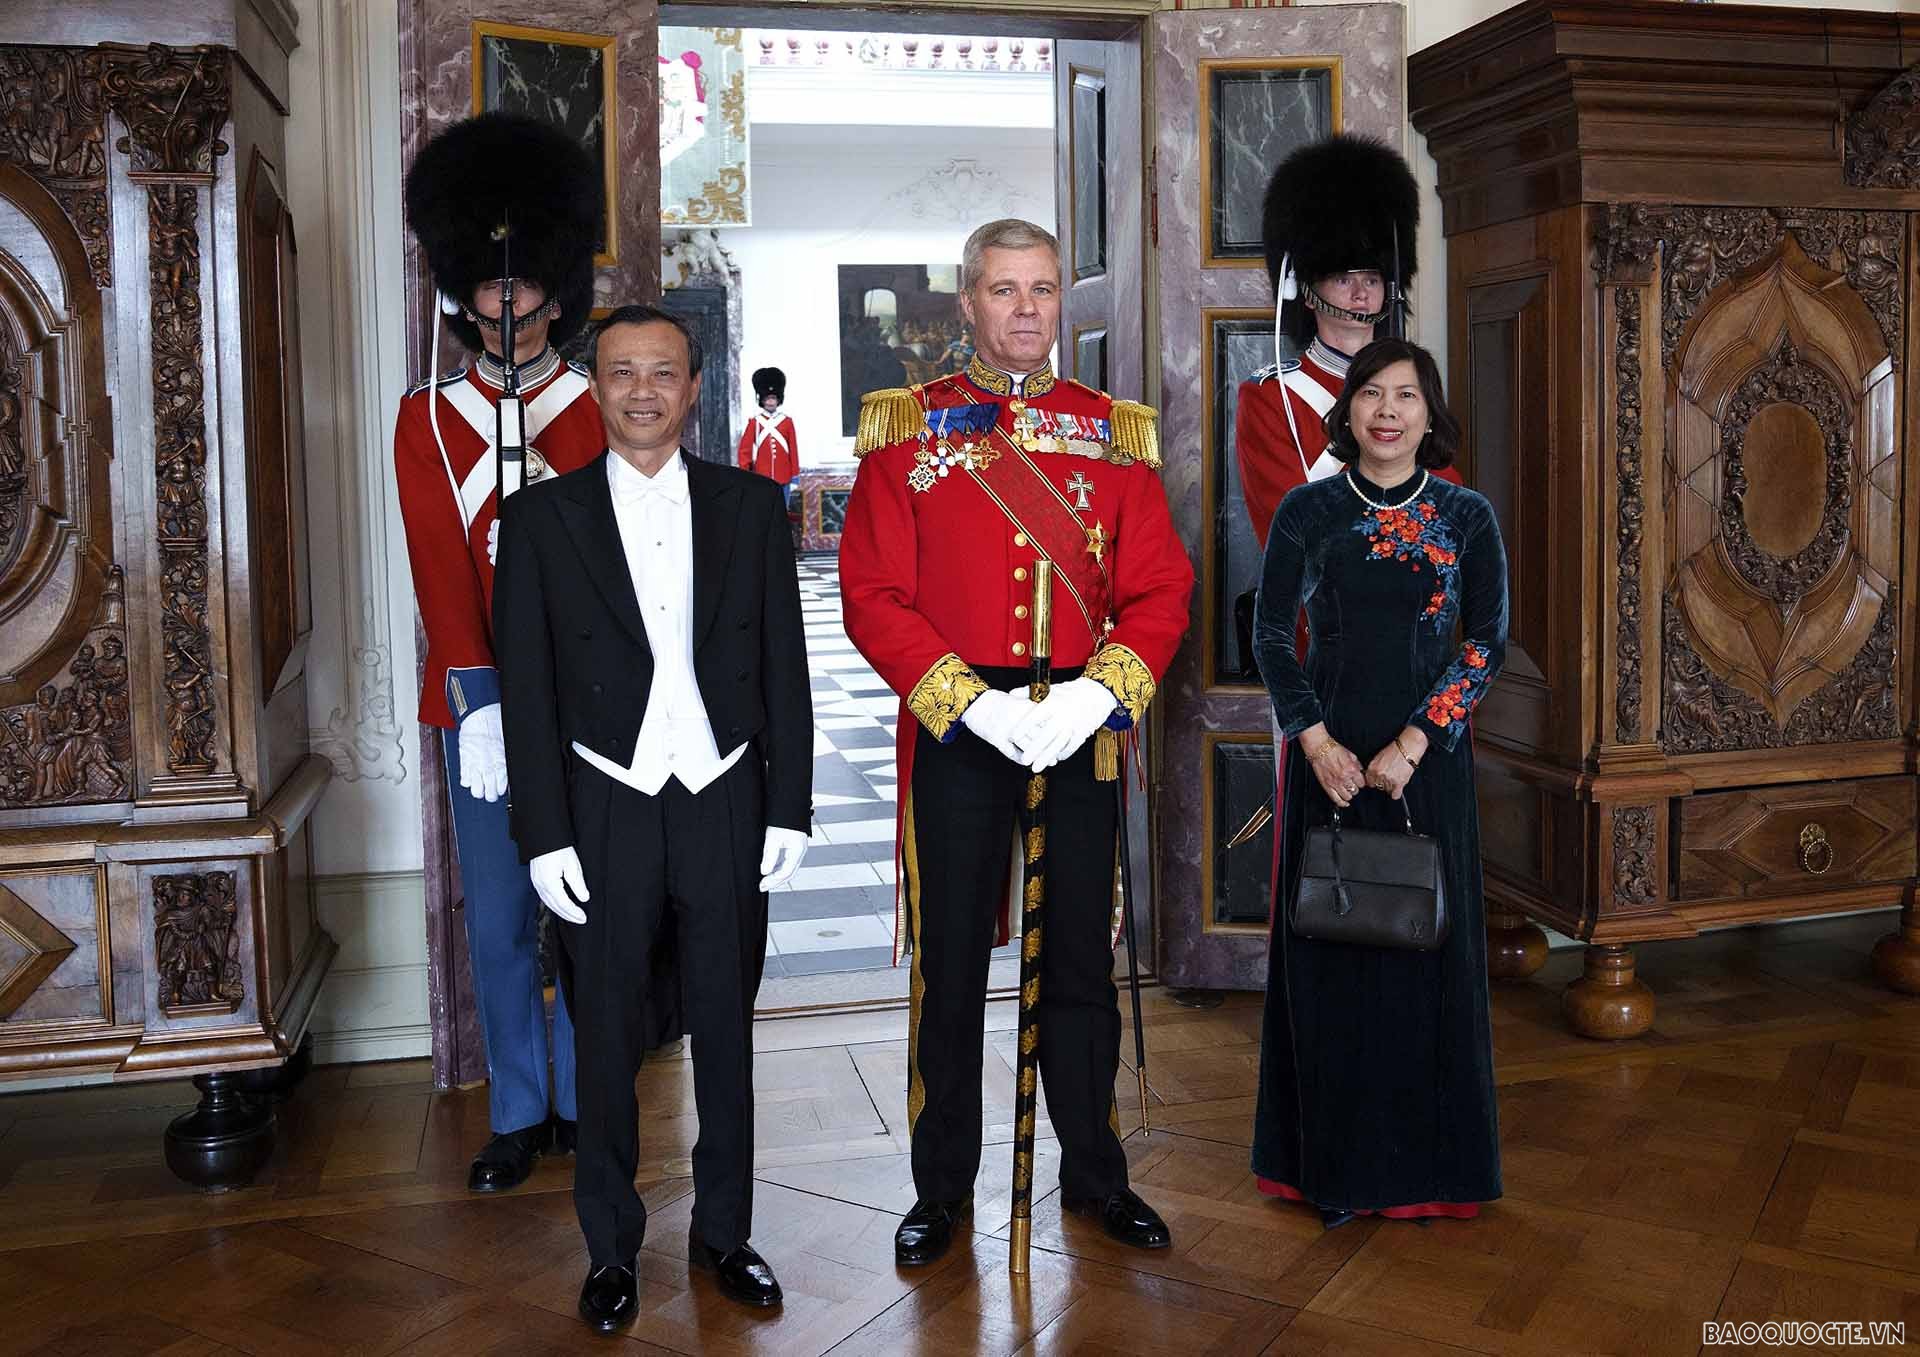 Đại sứ Lương Thanh Nghị trình Thư ủy nhiệm lên Nữ hoàng Đan Mạch Margrethe II